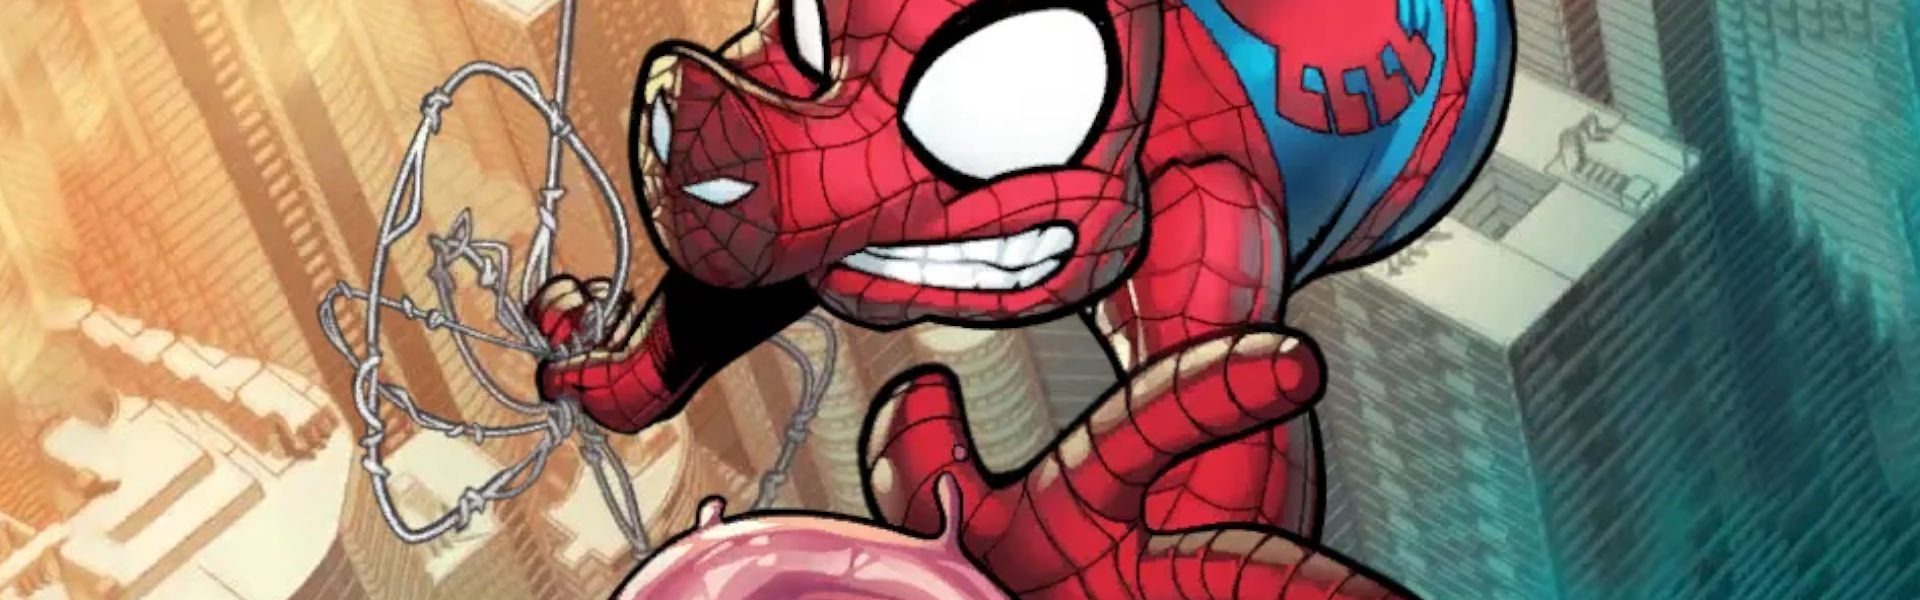 Spider-Ham Marvela Snapa przynosi świński ból